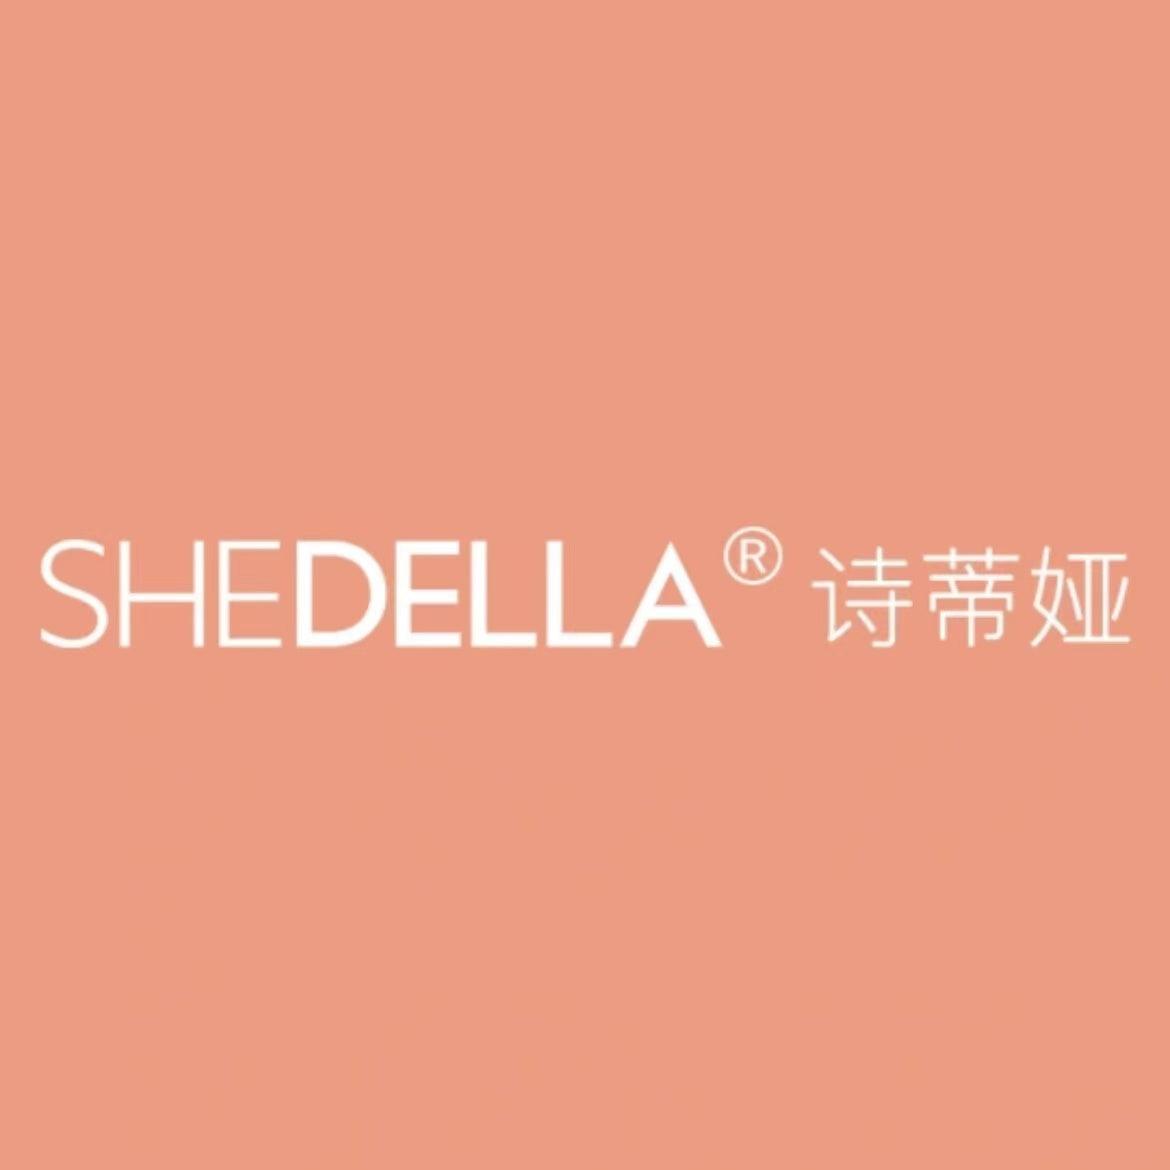 Shedella - Chic Decent